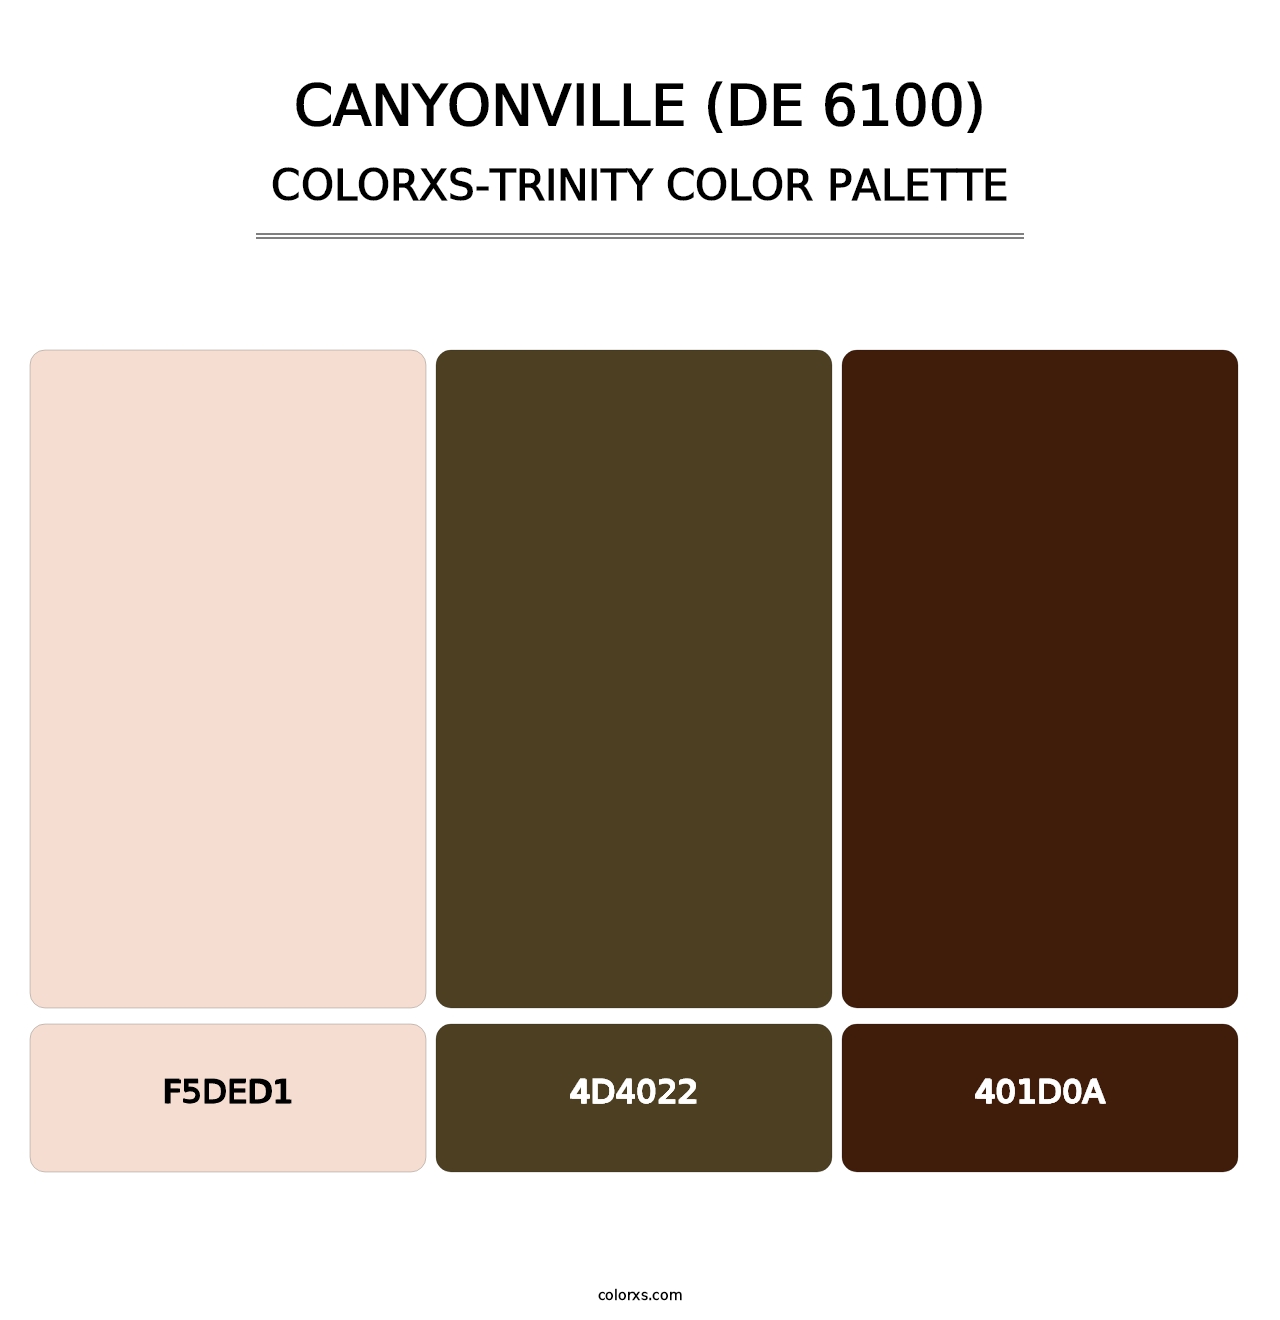 Canyonville (DE 6100) - Colorxs Trinity Palette